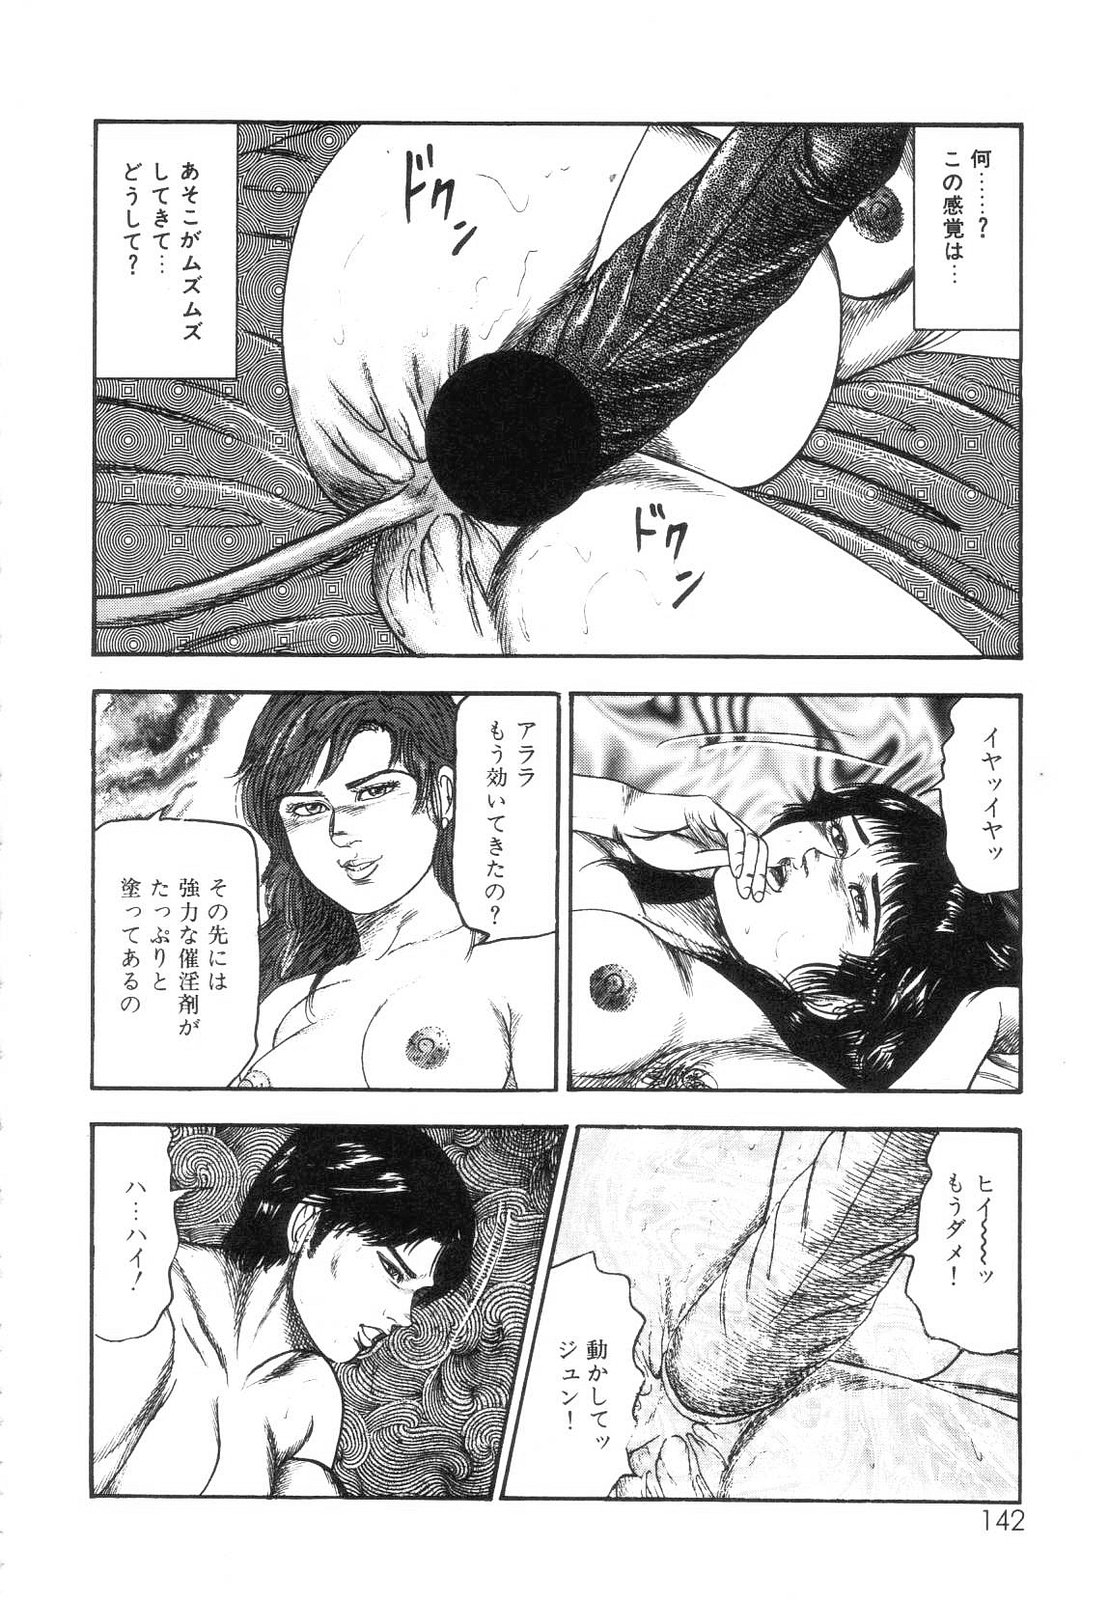 [Sanjou Tomomi] Shiro no Mokushiroku Vol. 7 - Shiiku Ningyou Erika no Shou 143